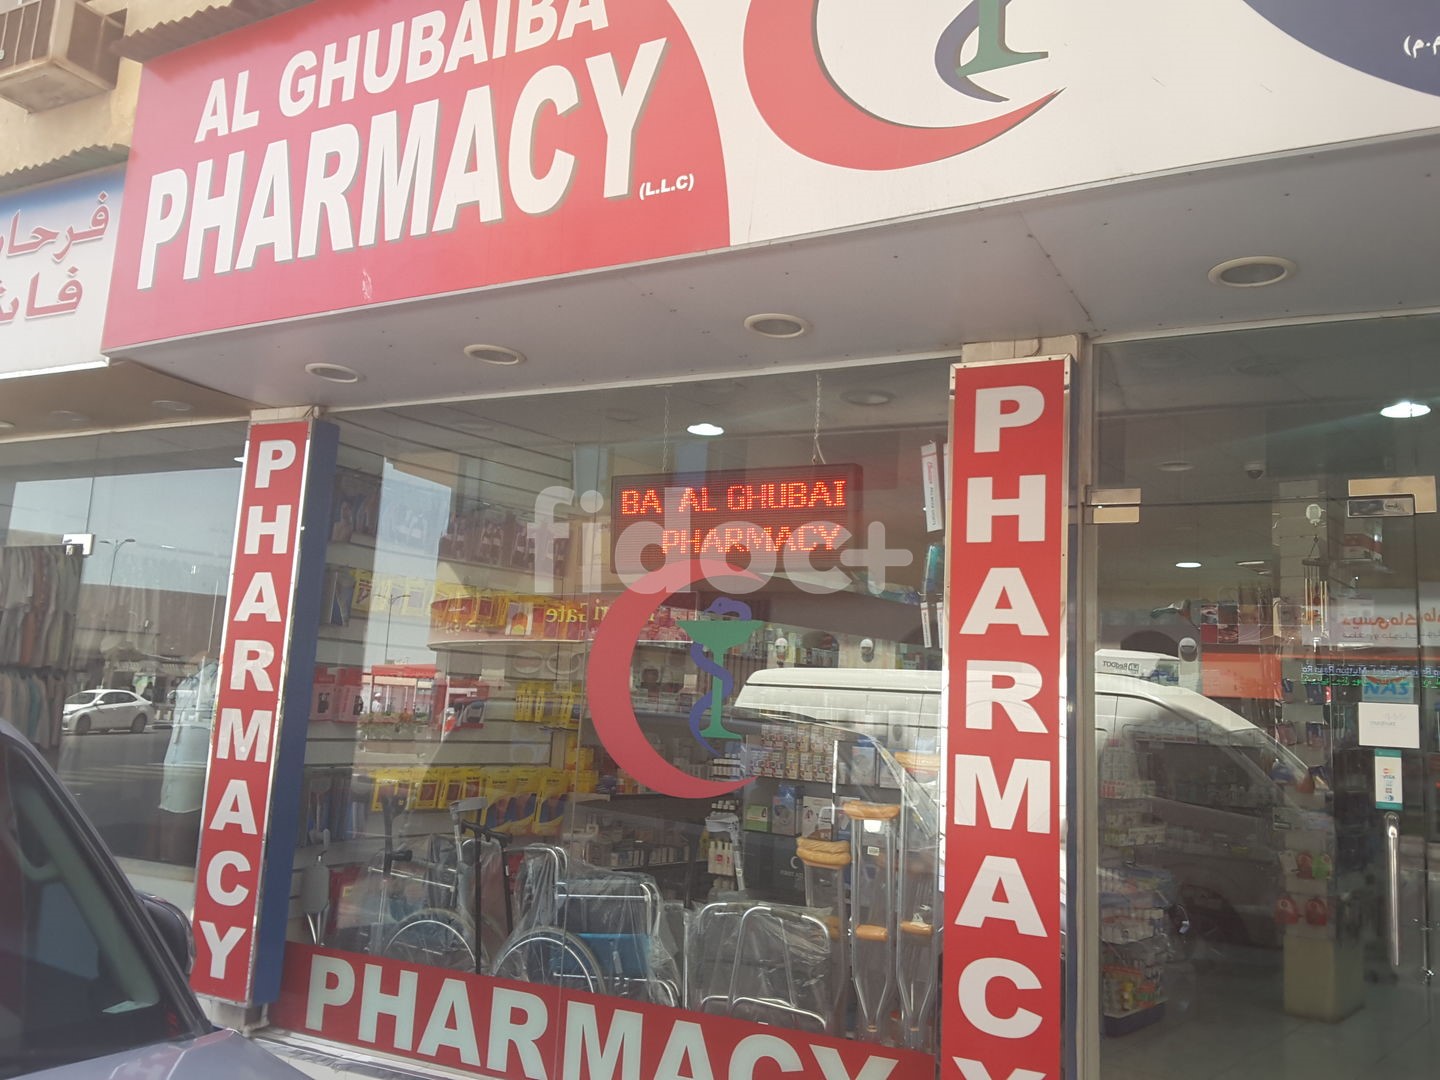 Al Ghubaiba Pharmacy, Dubai